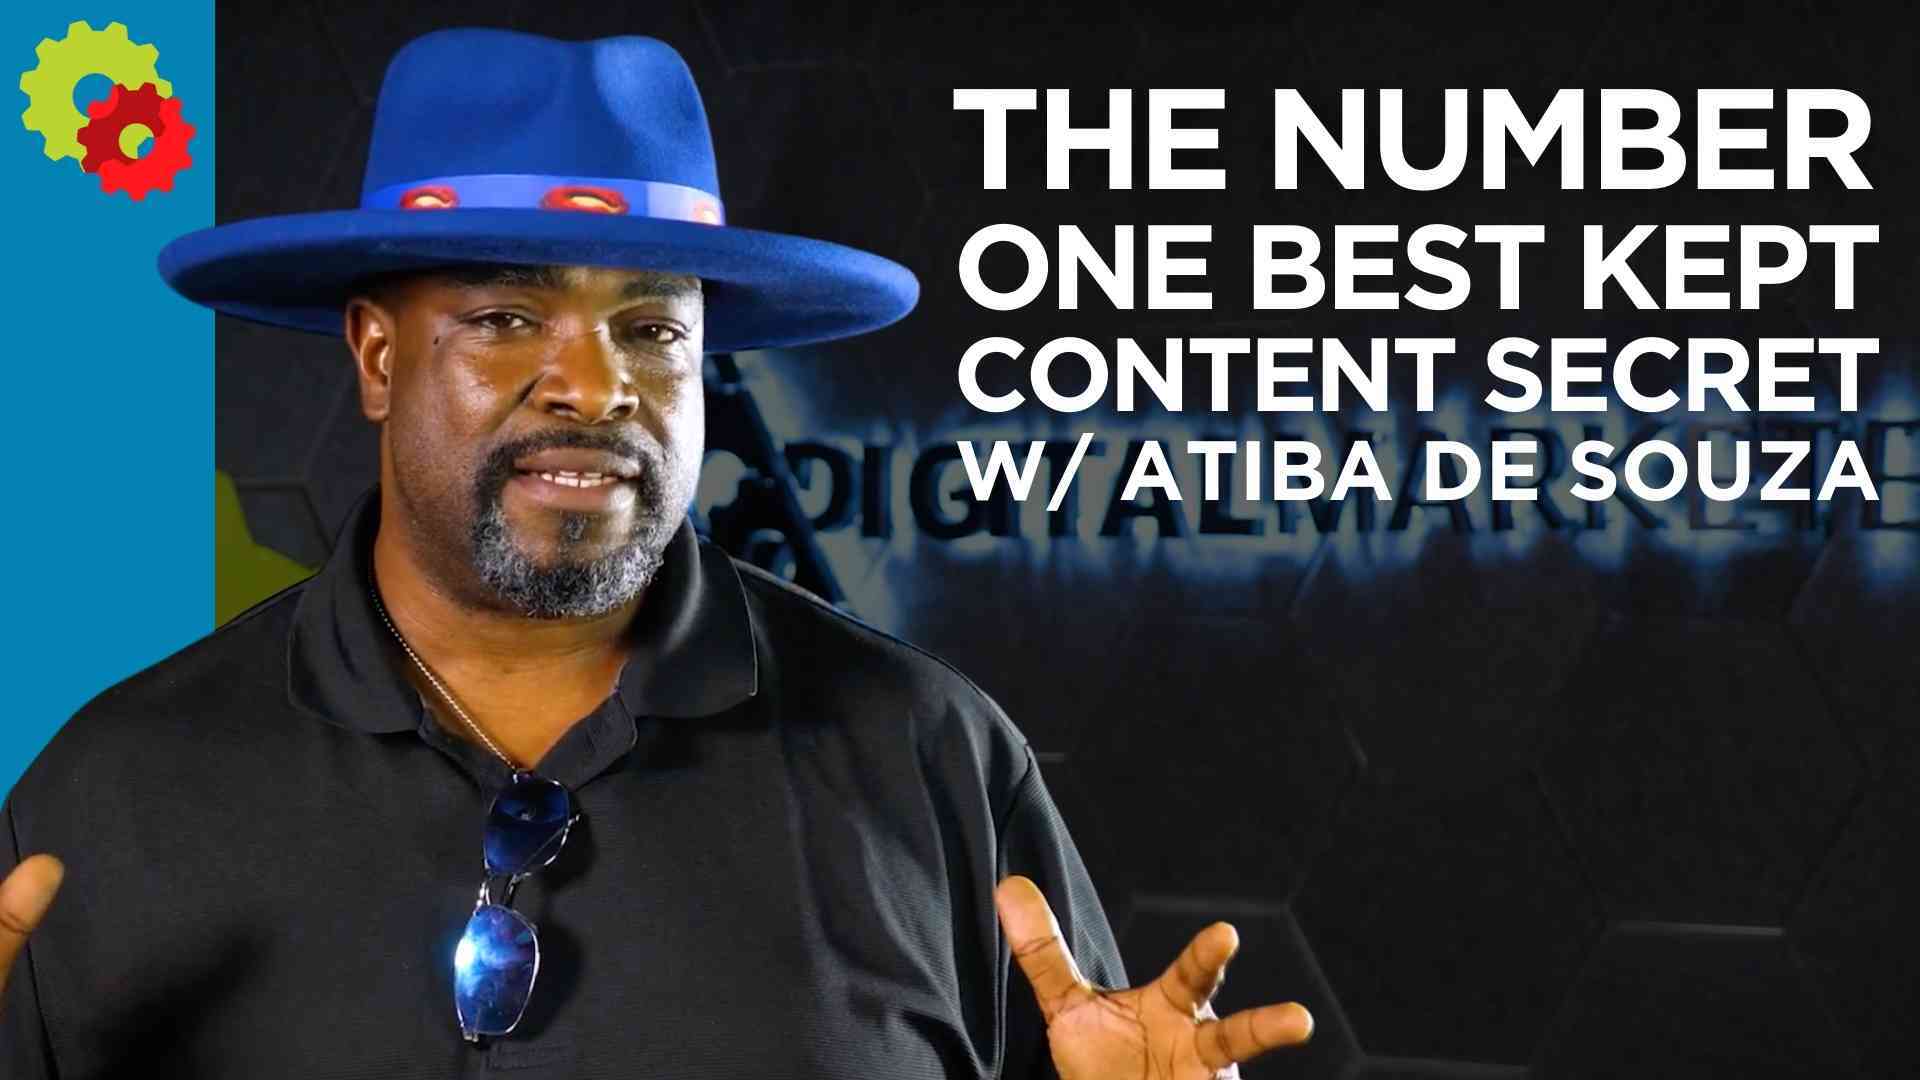 The Number One Best Kept Content Secret with Atiba de Souza [VIDEO]